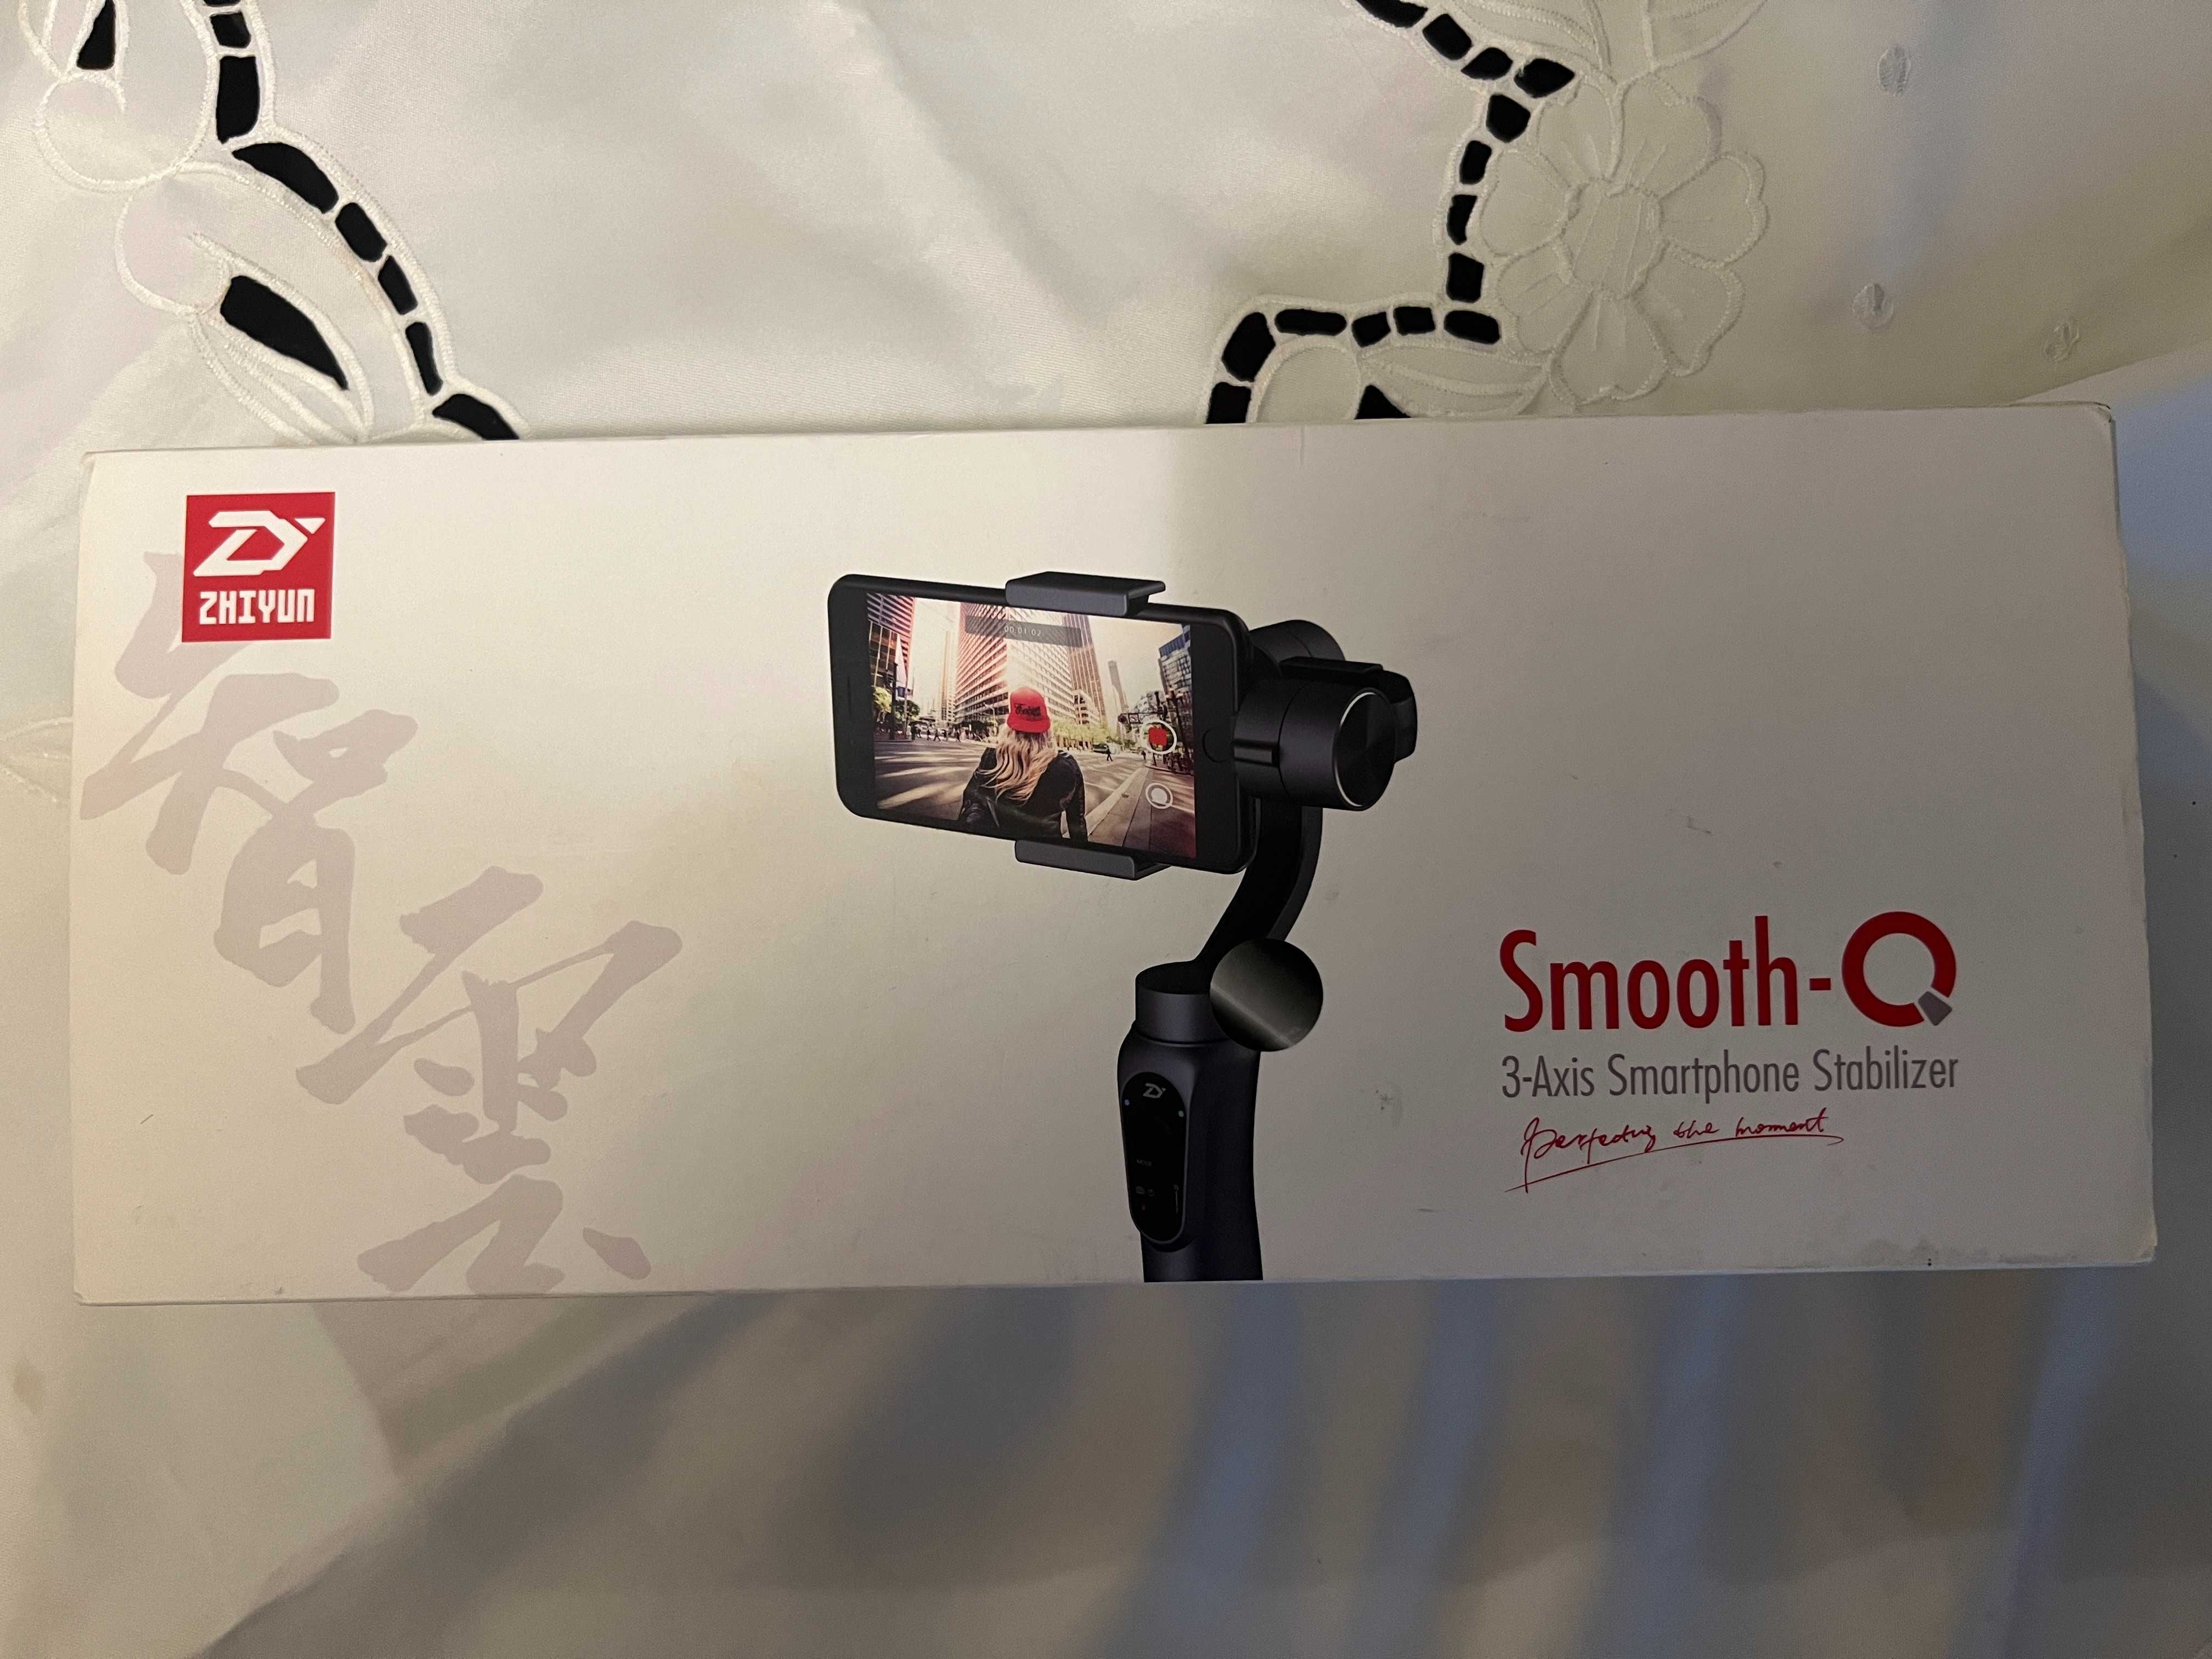 Gimbal Zhiyun Smooth-Q 3 axis smartphone